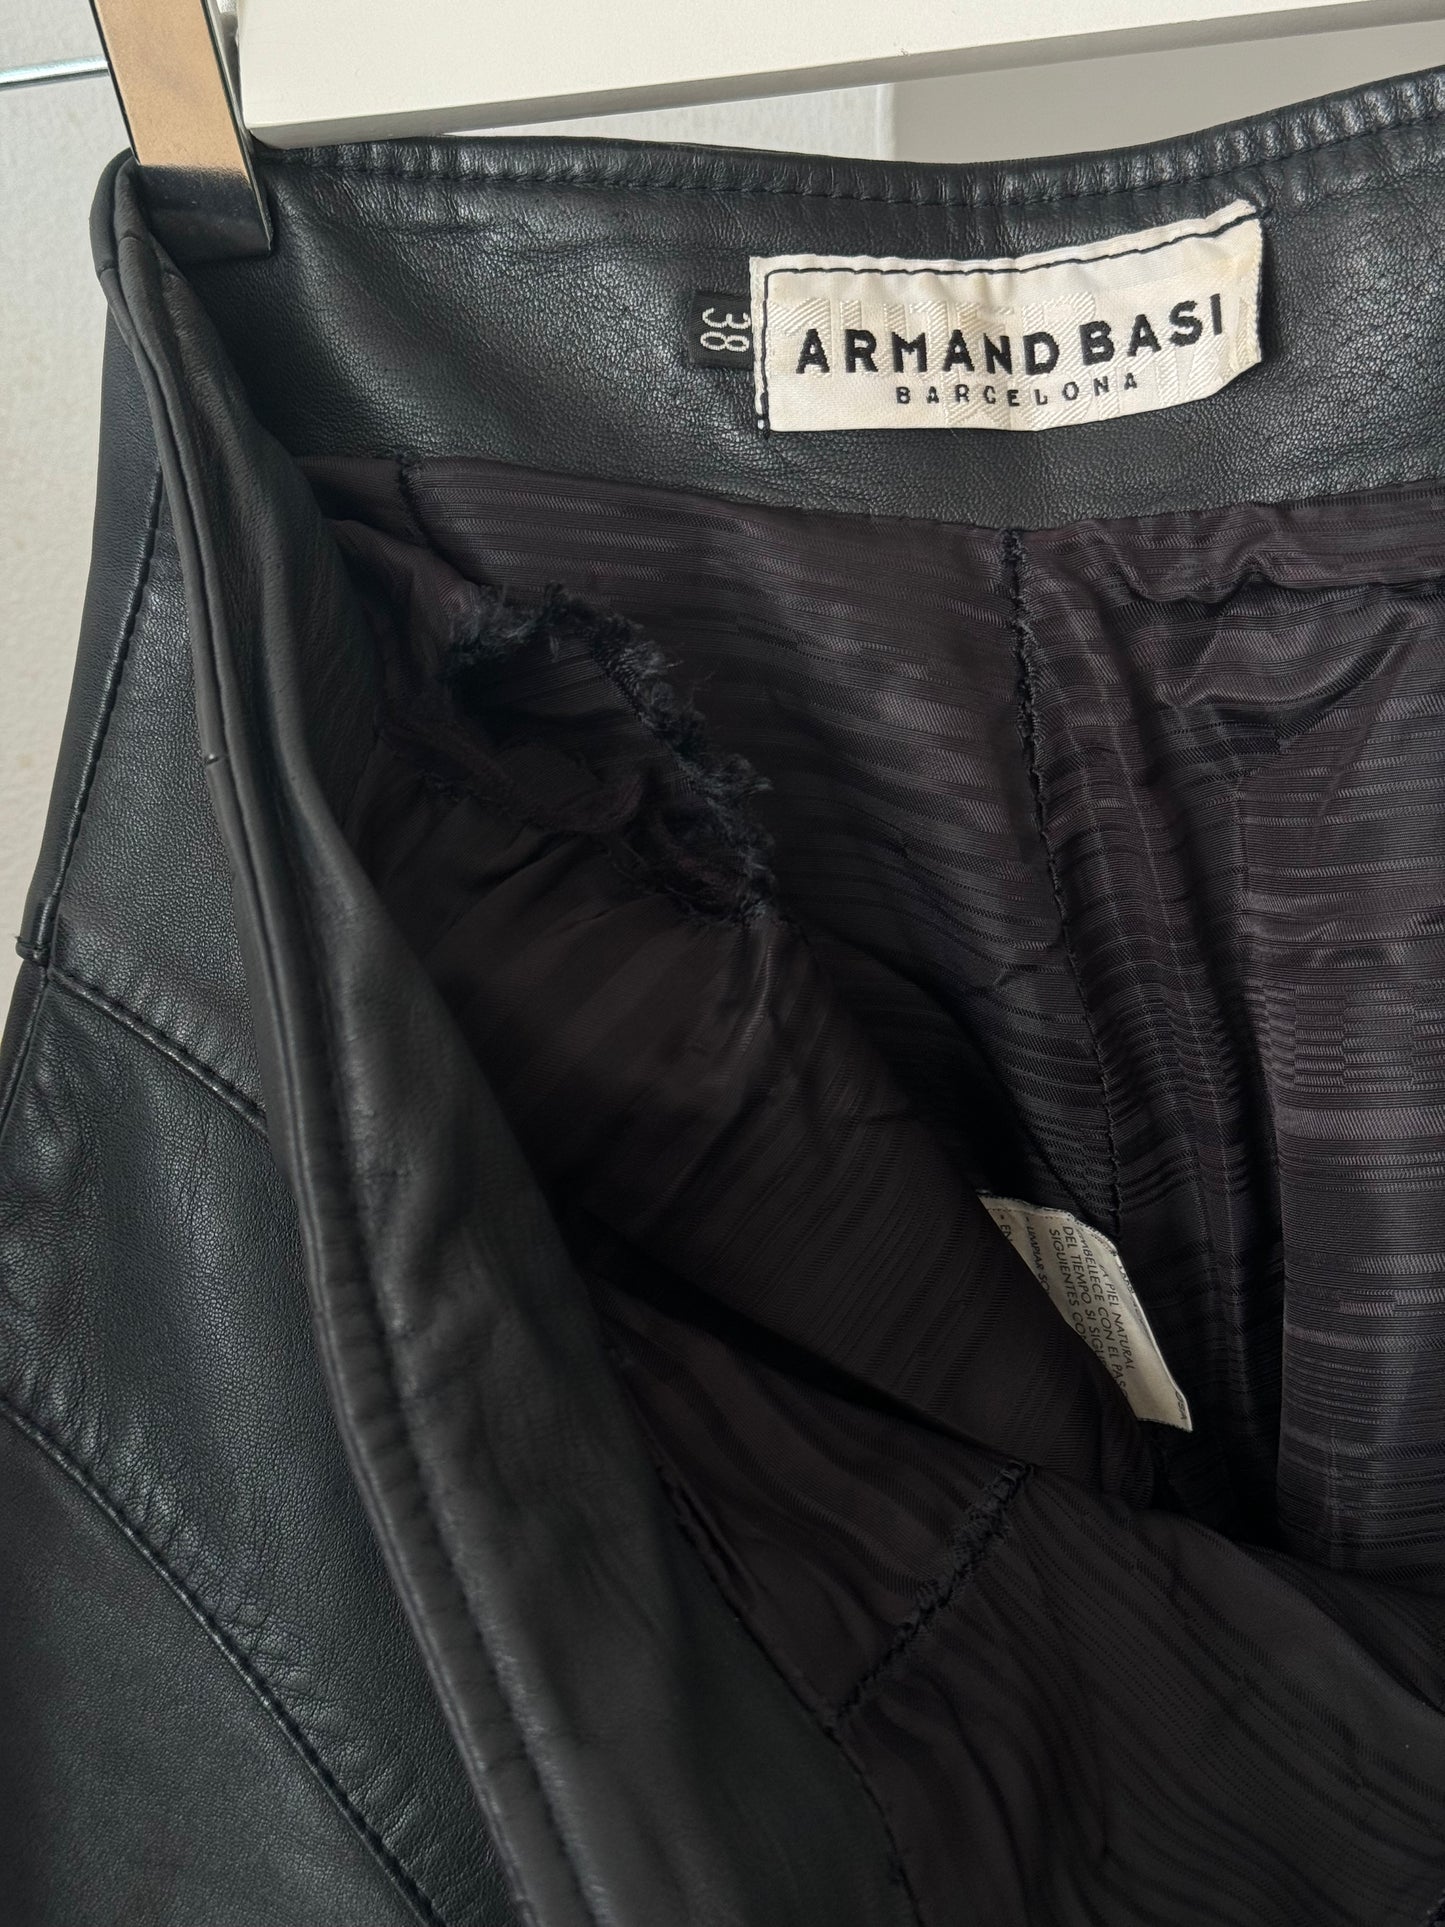 Pantalón de cuero Armand Basi Barcelona